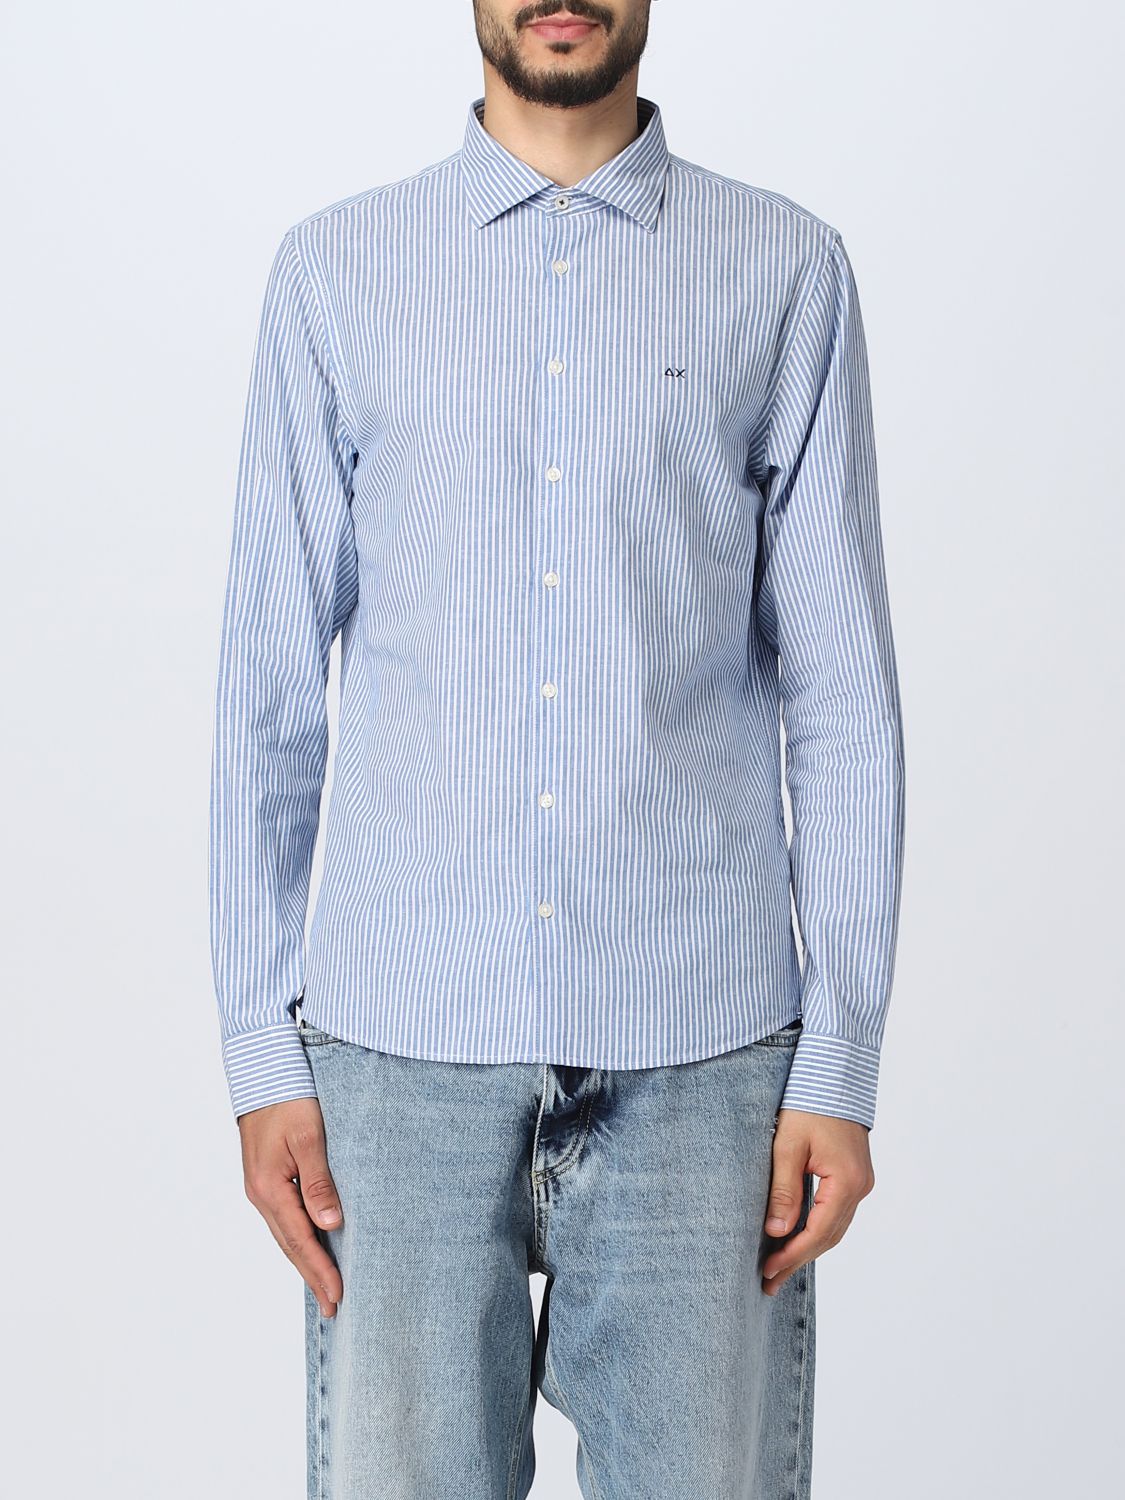 SUN 68: shirt for man - Gnawed Blue | Sun 68 shirt S33106 online on ...